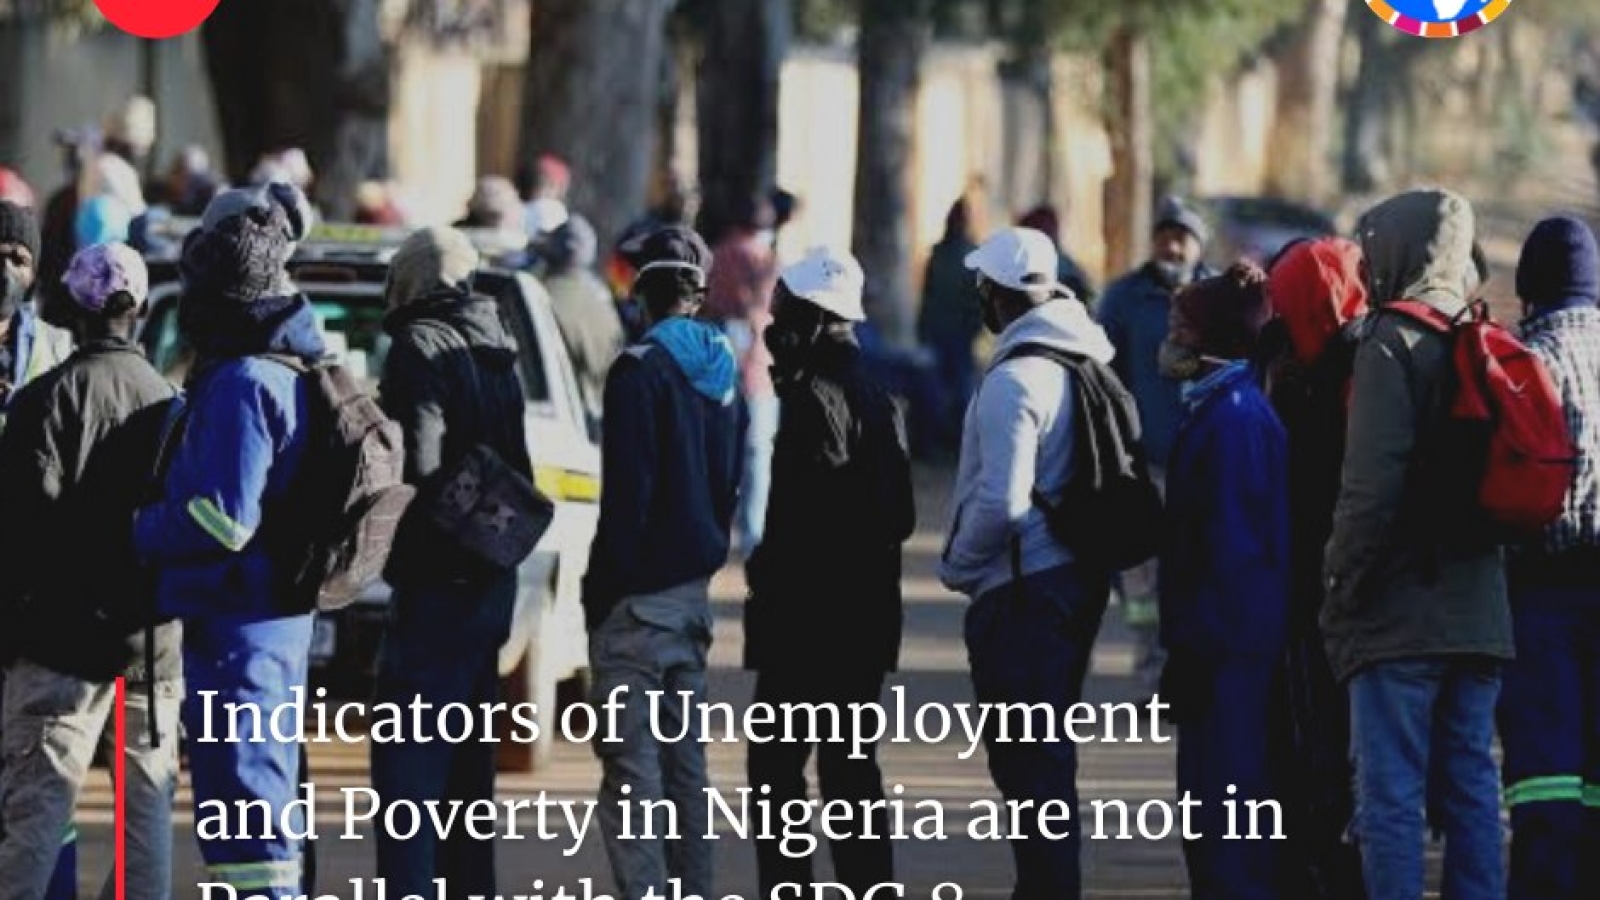 مؤشرات البطالة والفقر في نيجيريا لا تتوافق مع الهدف 8 من أهداف التنمية المستدامة